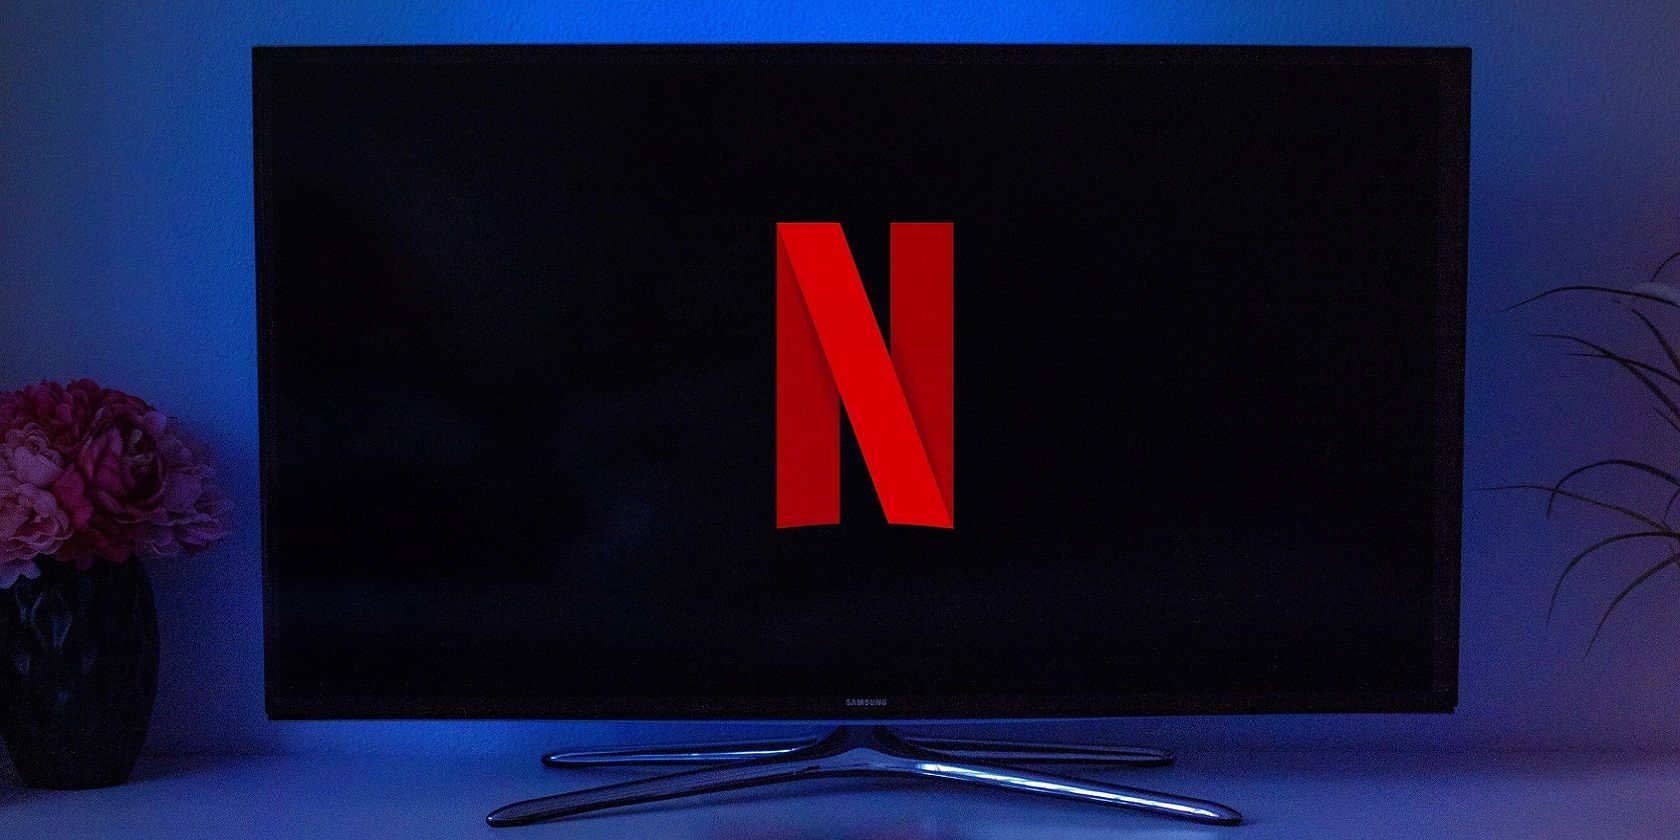 Netflix logo on TV